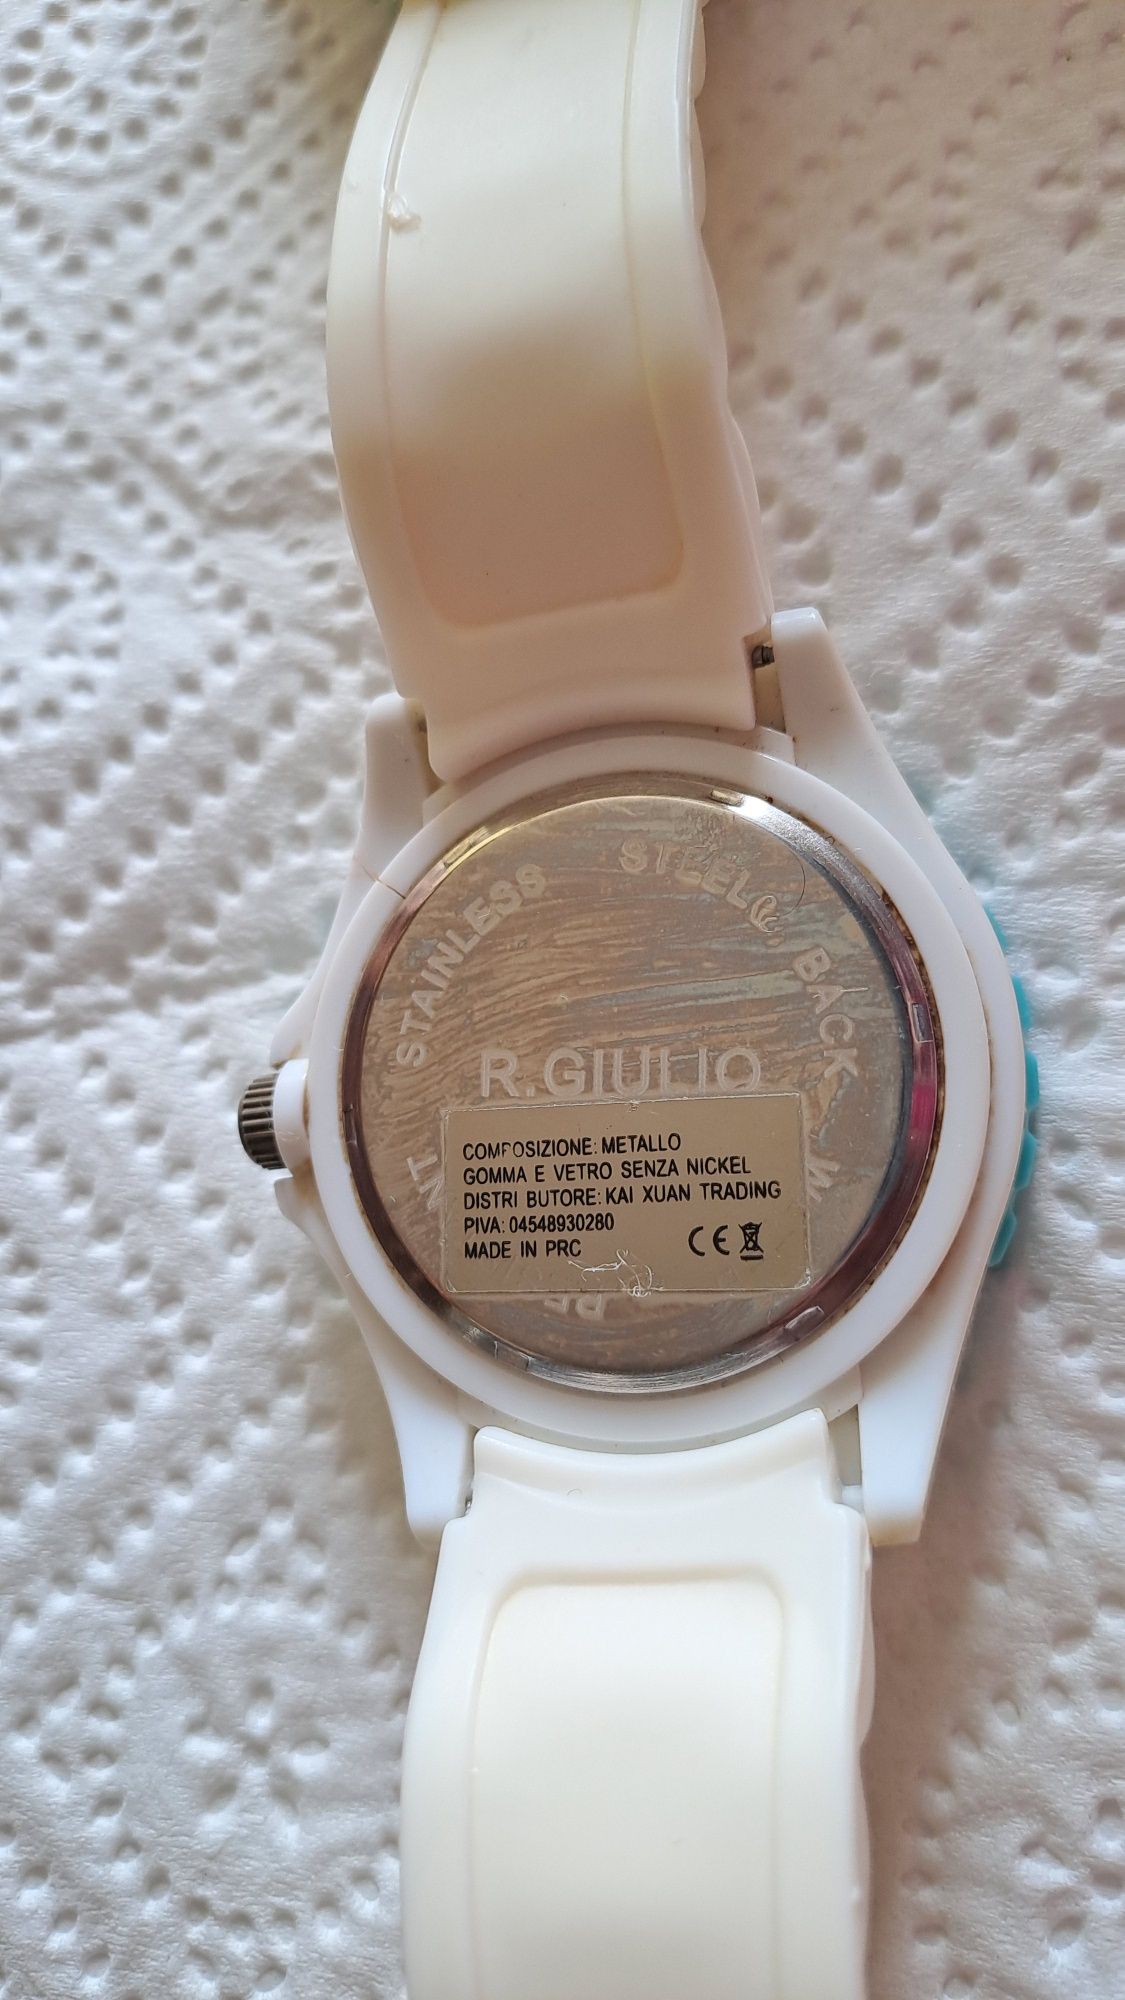 R.Giulio zegarek jak Borelli Włochy